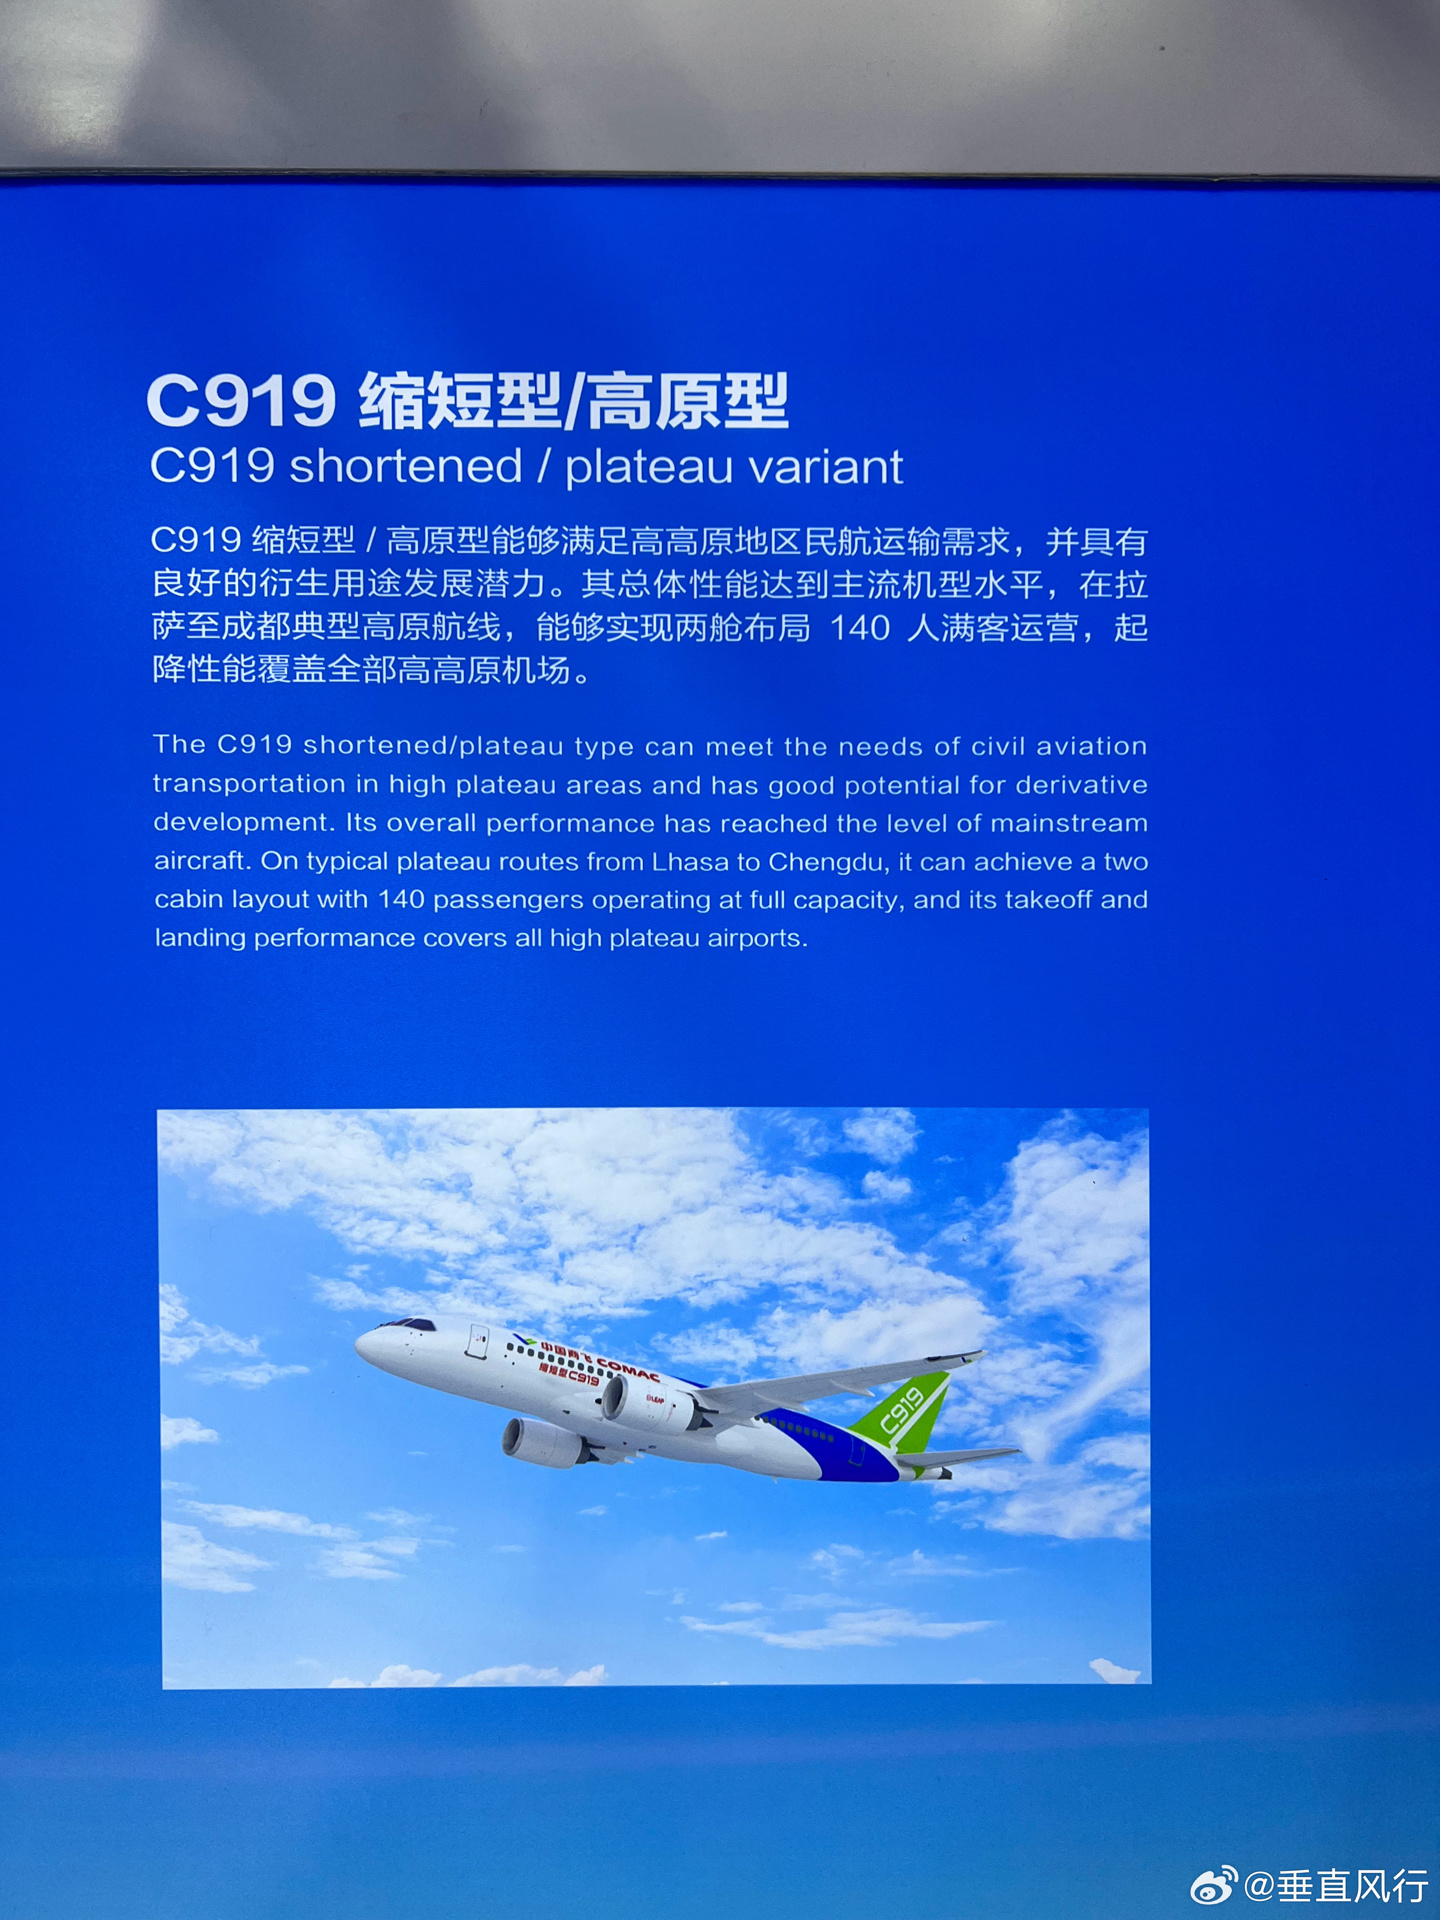 中国商飞将推出 C919 大飞机衍生机型：“高原型”140 座和“加长型”210 座